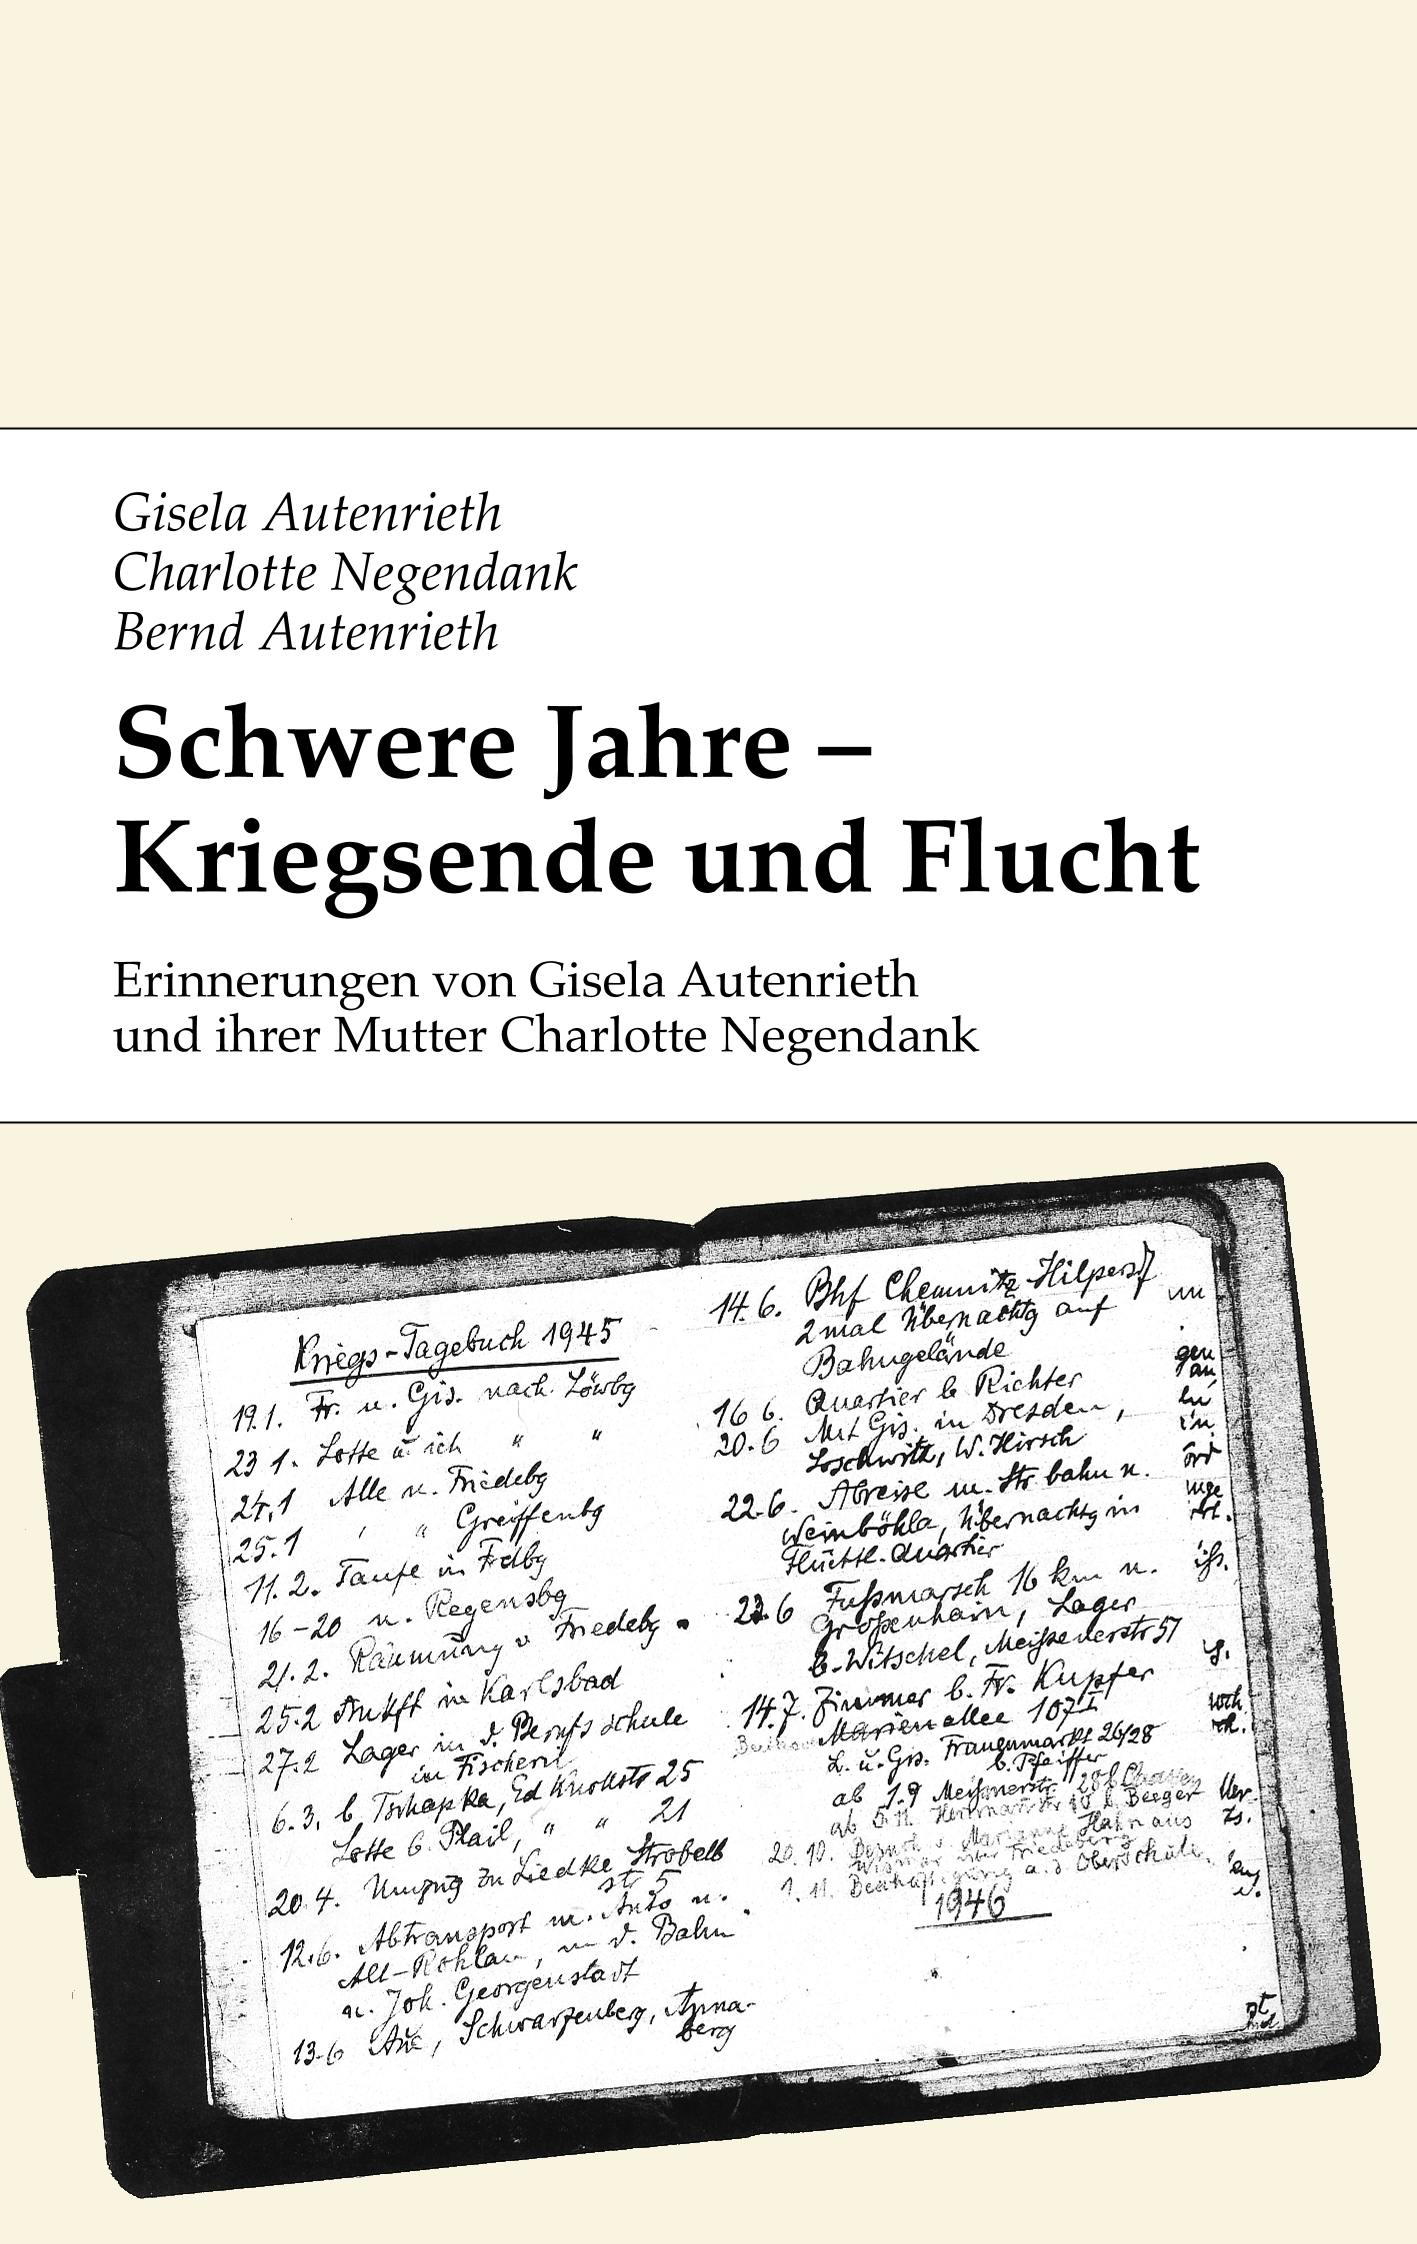 Schwere Jahre - Kriegsende und Flucht - Gisela Autenrieth, Charlotte Negendank, Bernd Autenrieth